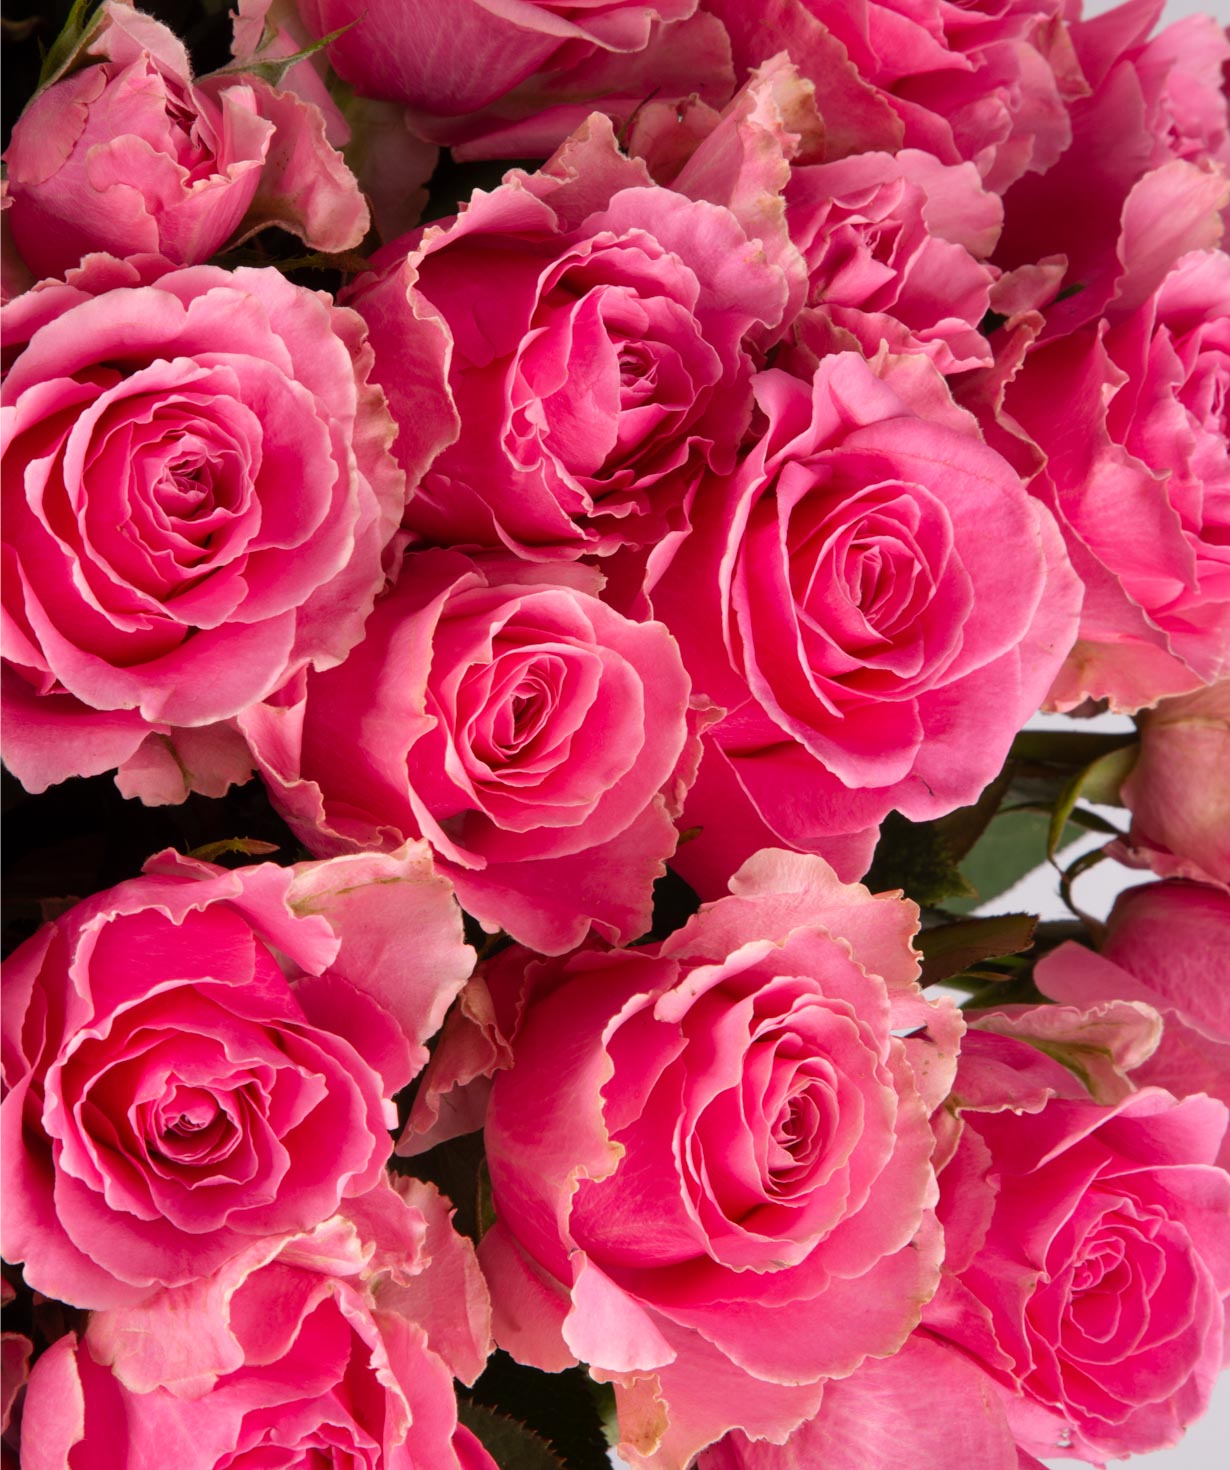 Ծաղկեփունջ «Զարիա» վարդերով